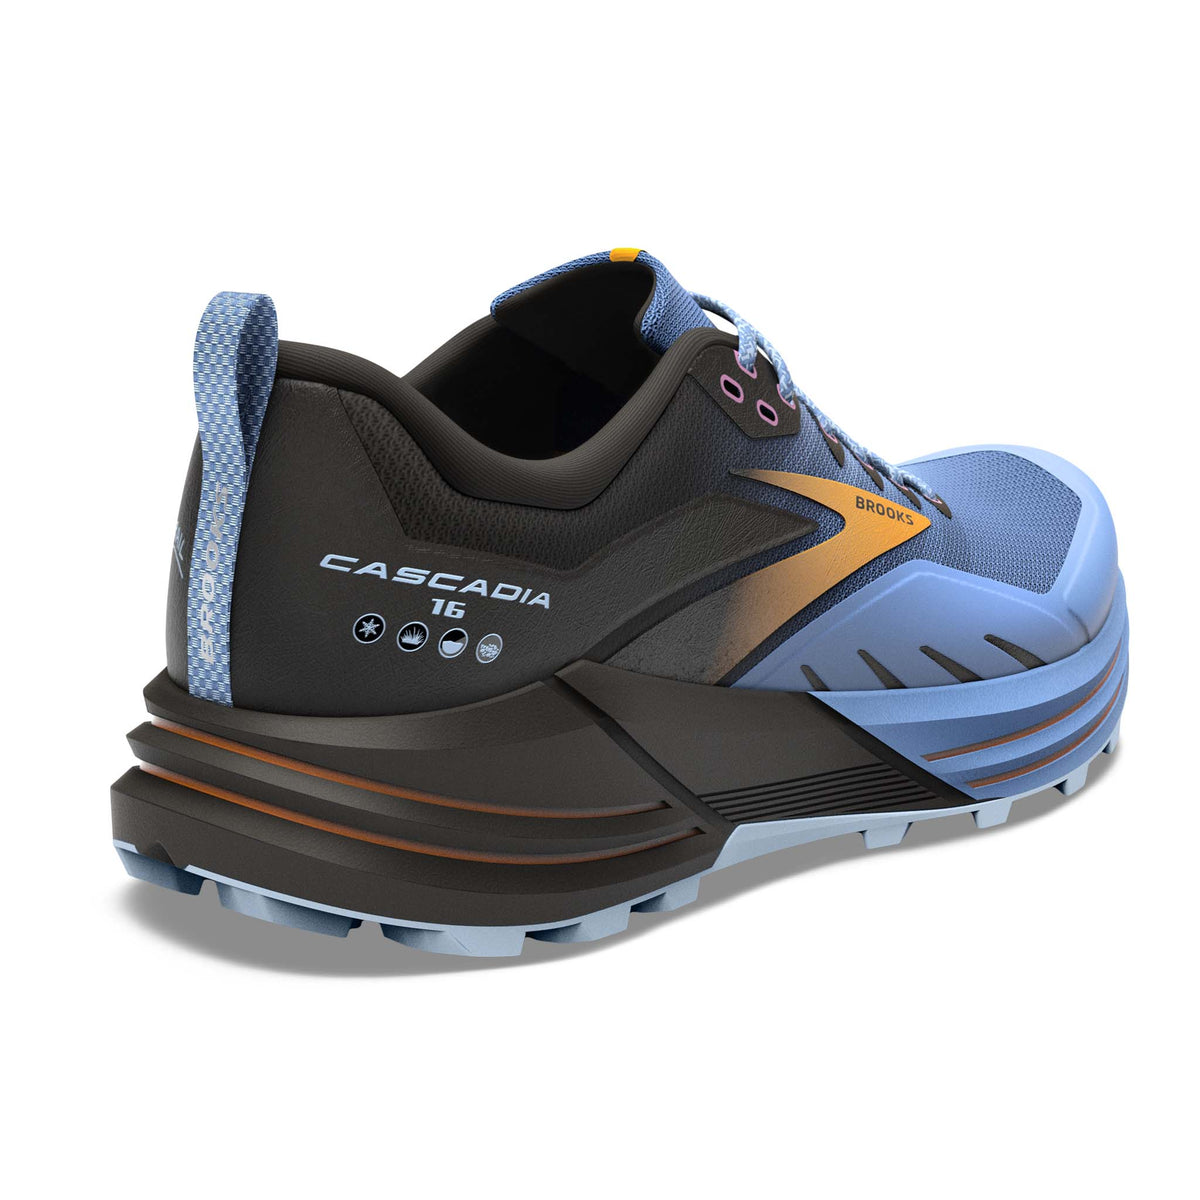 Brooks Cascadia 16 chaussures de course à pied trail femme talon bleu noir jaune